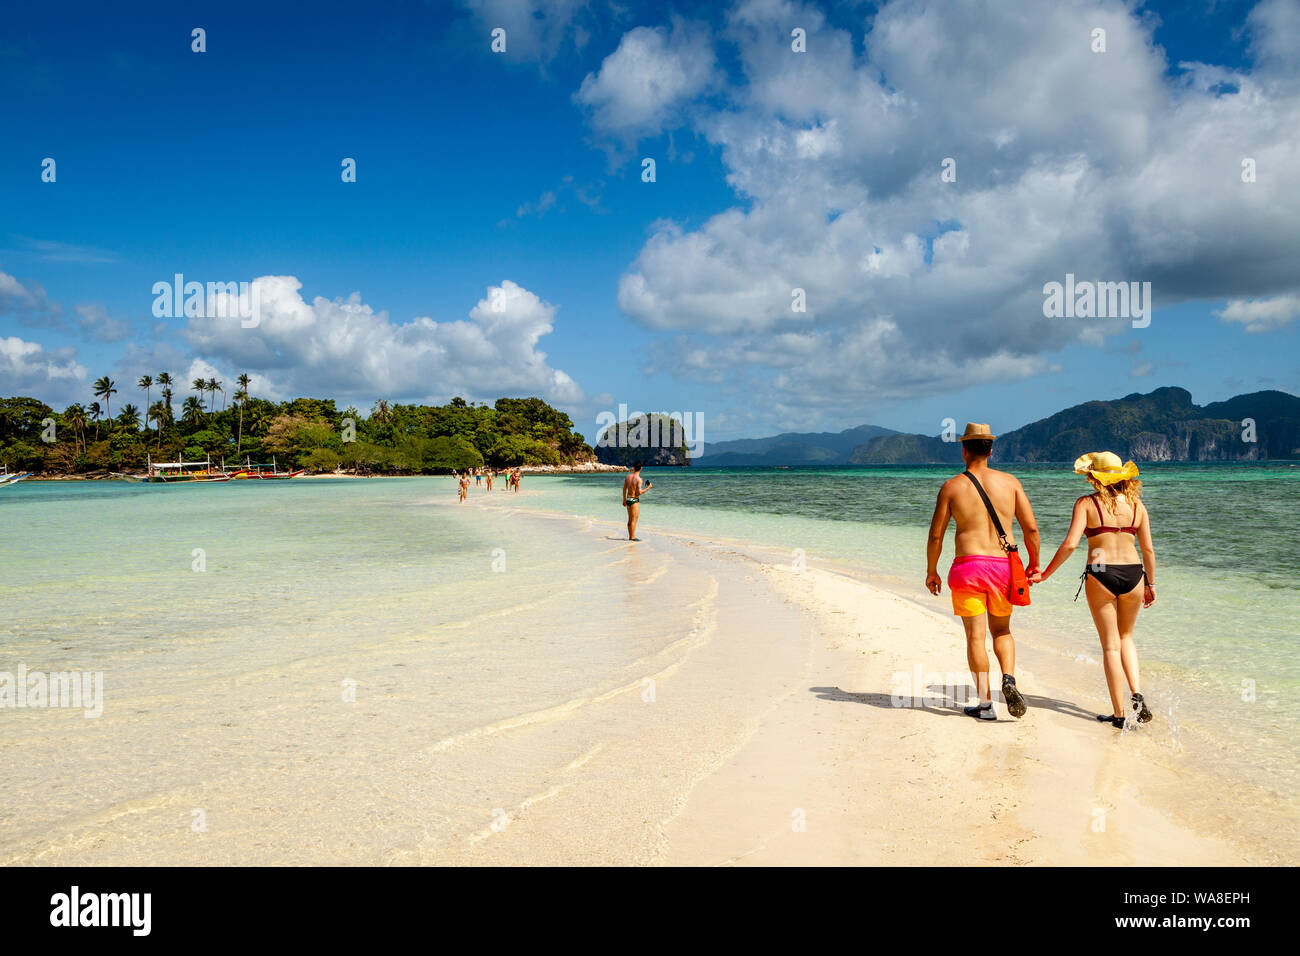 Les touristes marcher sur un banc de sable à marée basse, l'île aux Serpents, El Nido, Palawan, Philippines Banque D'Images